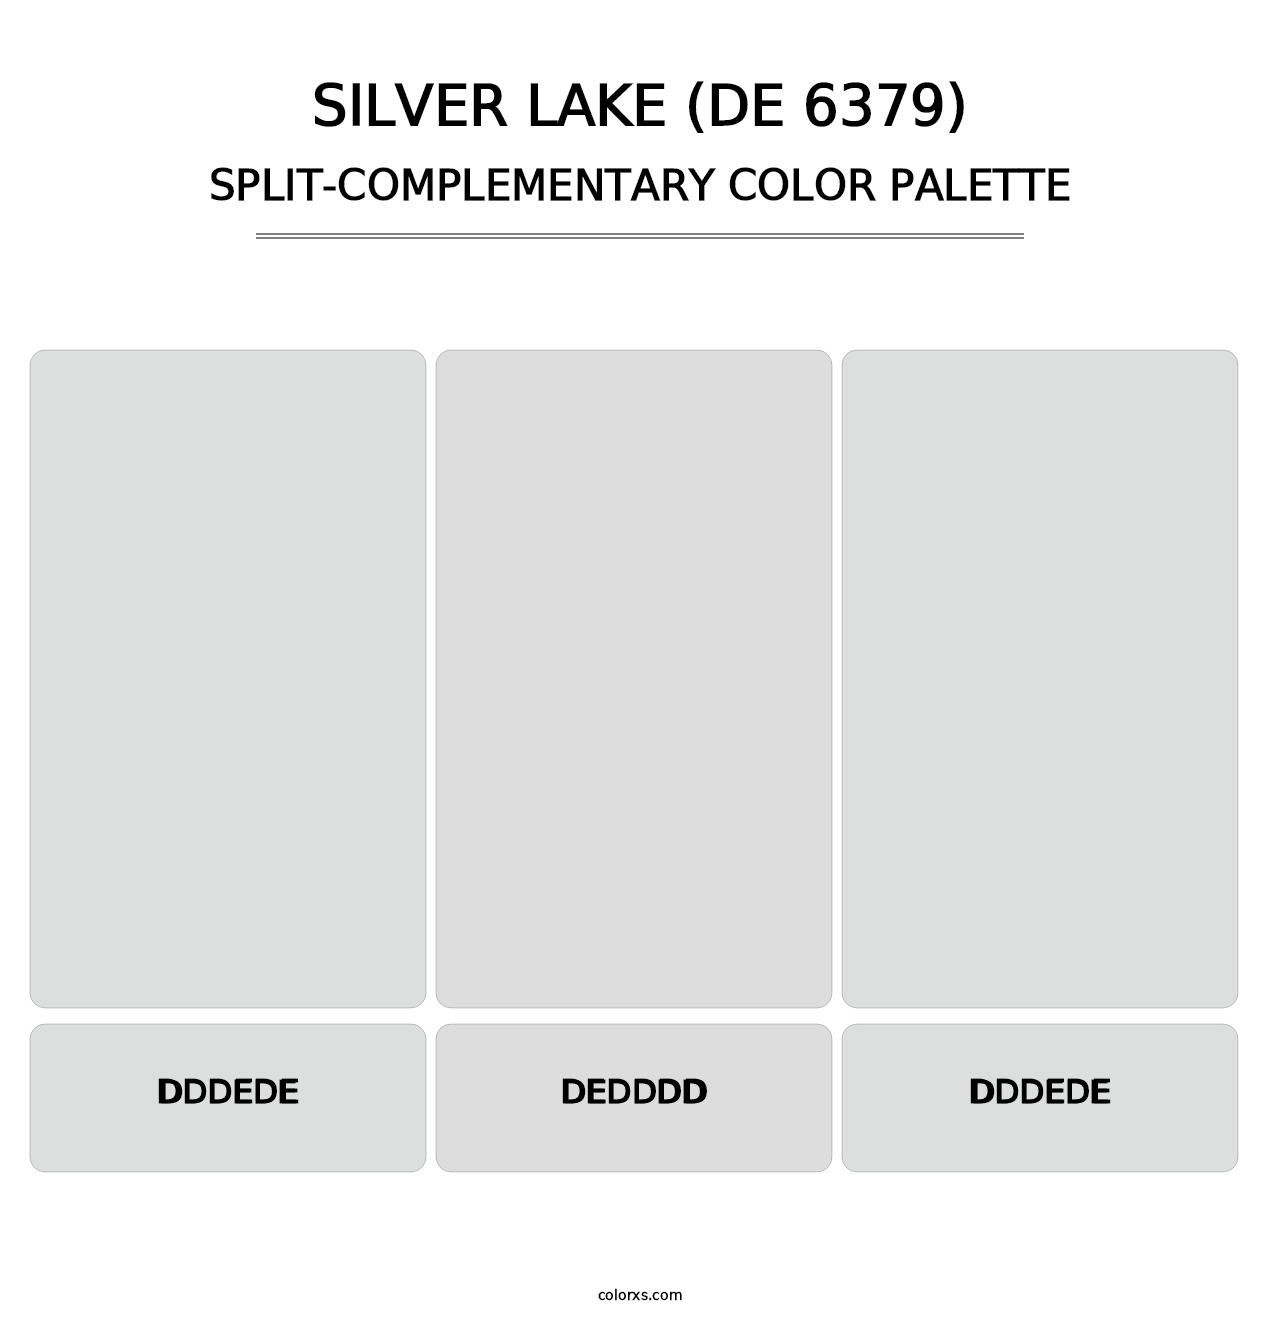 Silver Lake (DE 6379) - Split-Complementary Color Palette